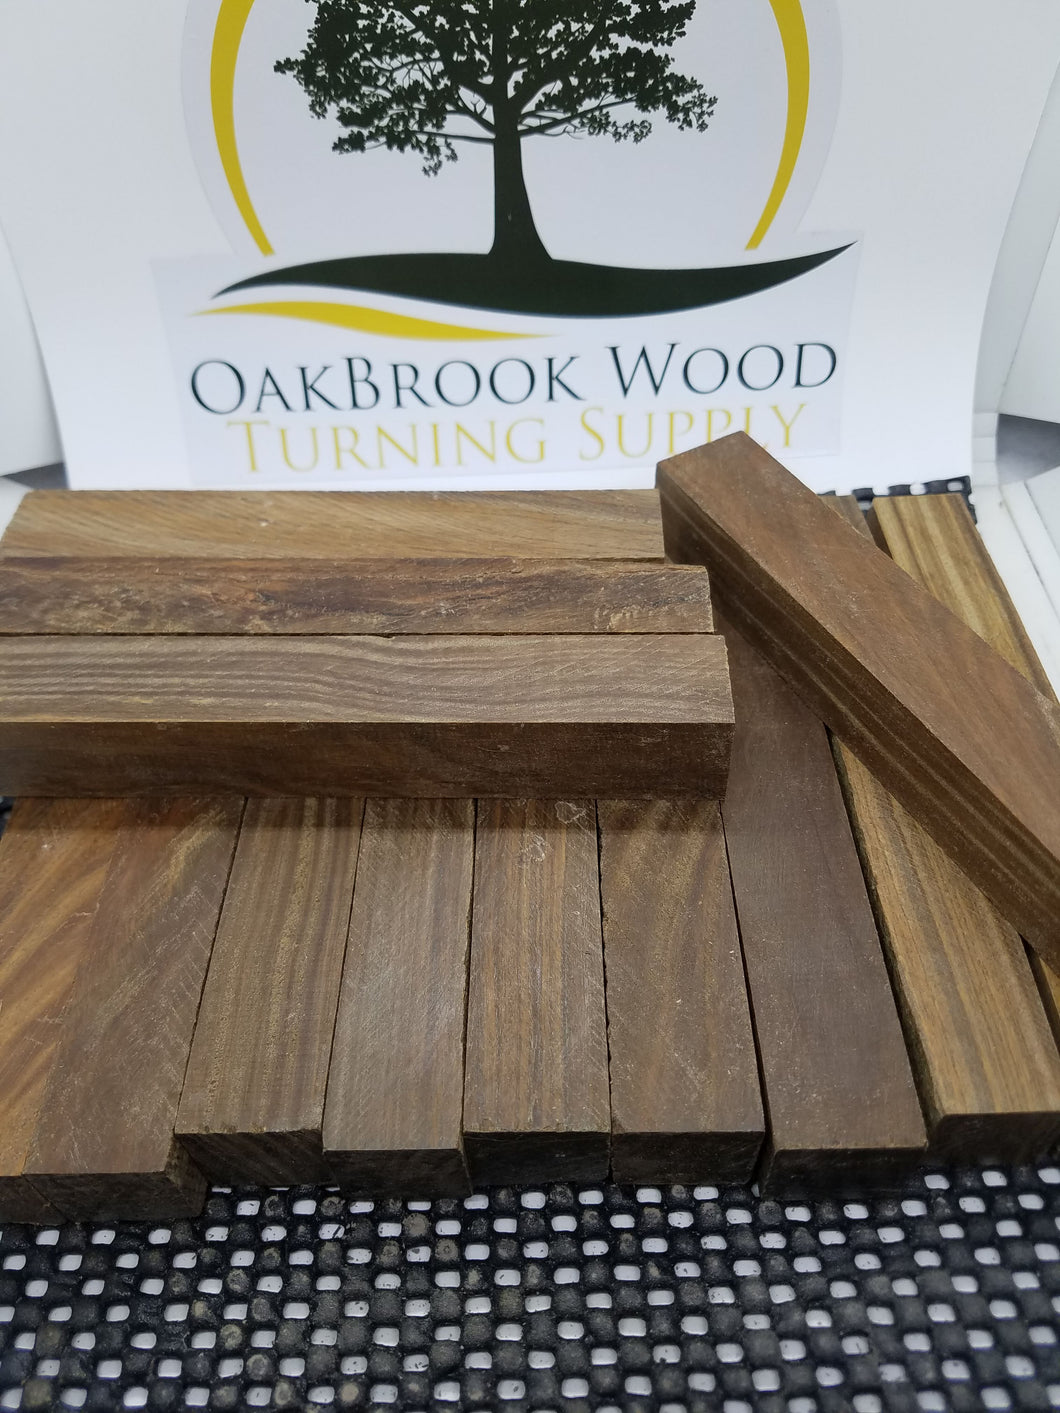 Lignum Vitae (Genuine) - Oakbrook Wood Turning Supply